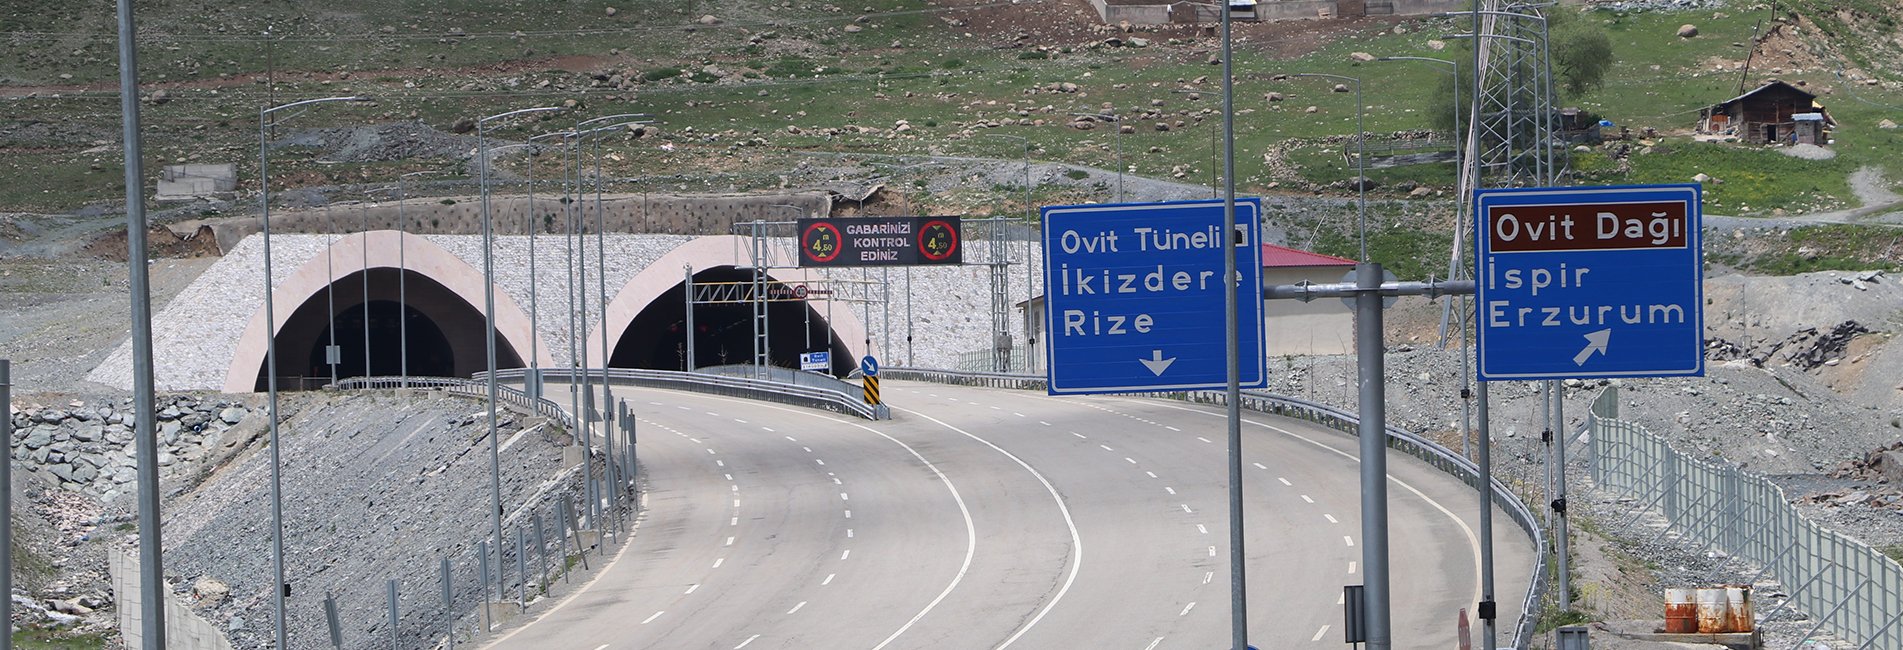 Ovit Tüneli İle Ulaşım Rize-Erzurum Arasında 4 Yıldır Yaz Kış Aksamıyor